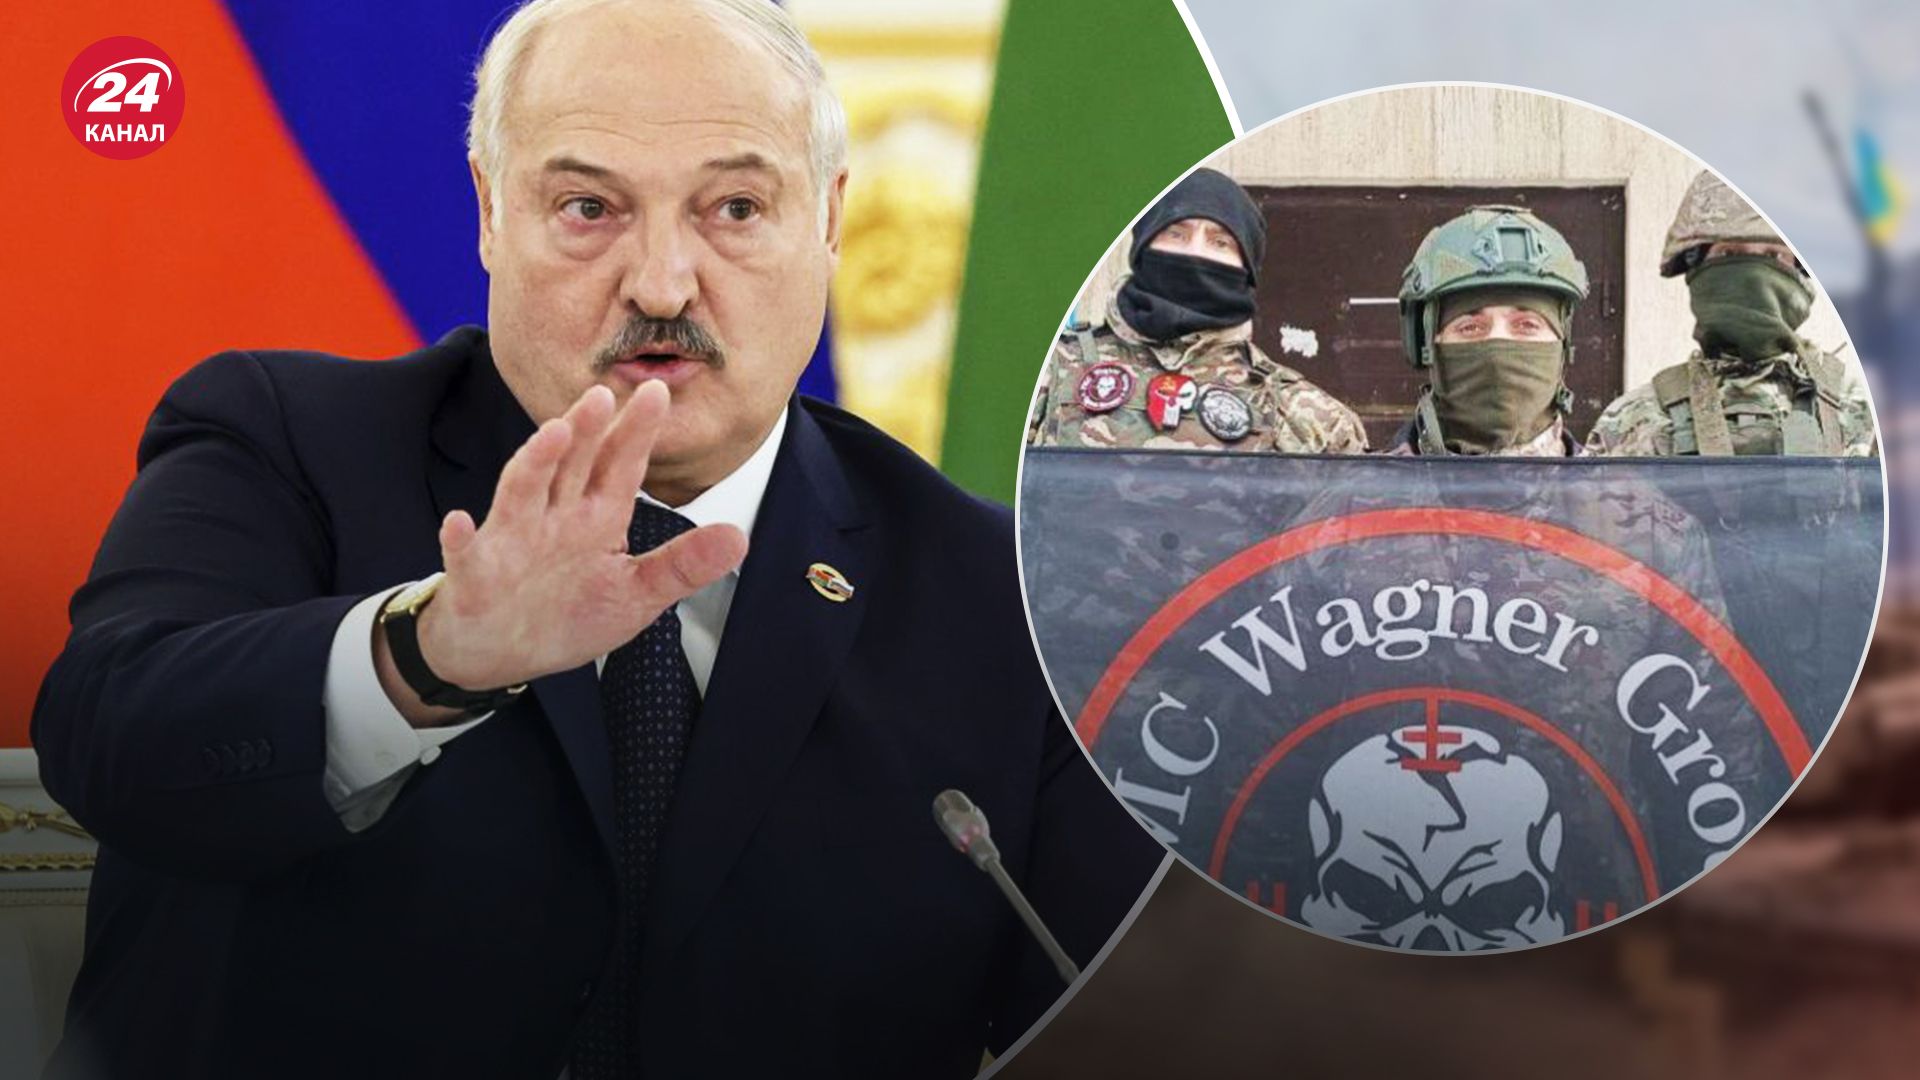 За словами Лукашенка, він не відправляв вагнерівців у Польщу